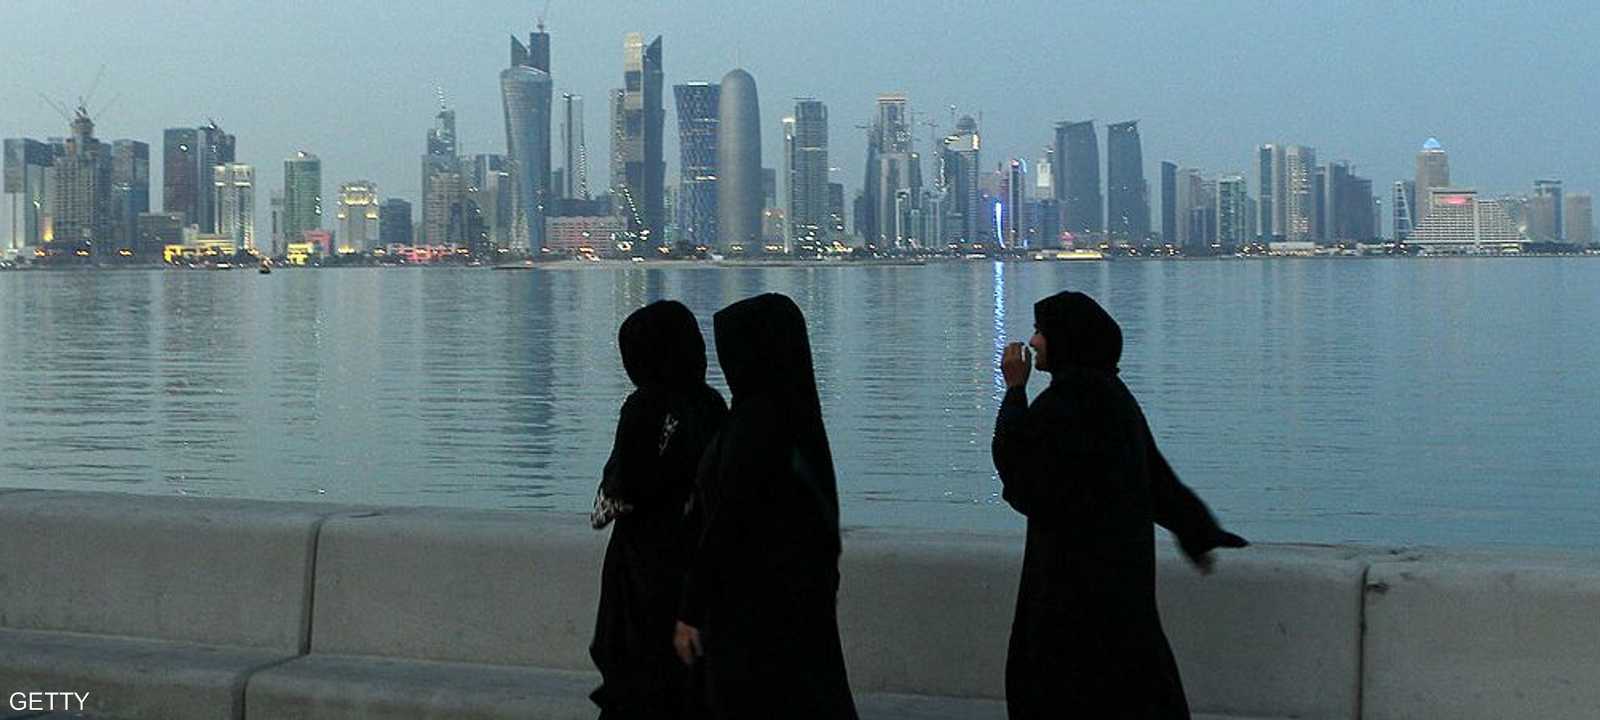 الدولة القطرية تمر من "وضع اقتصادي صعب"